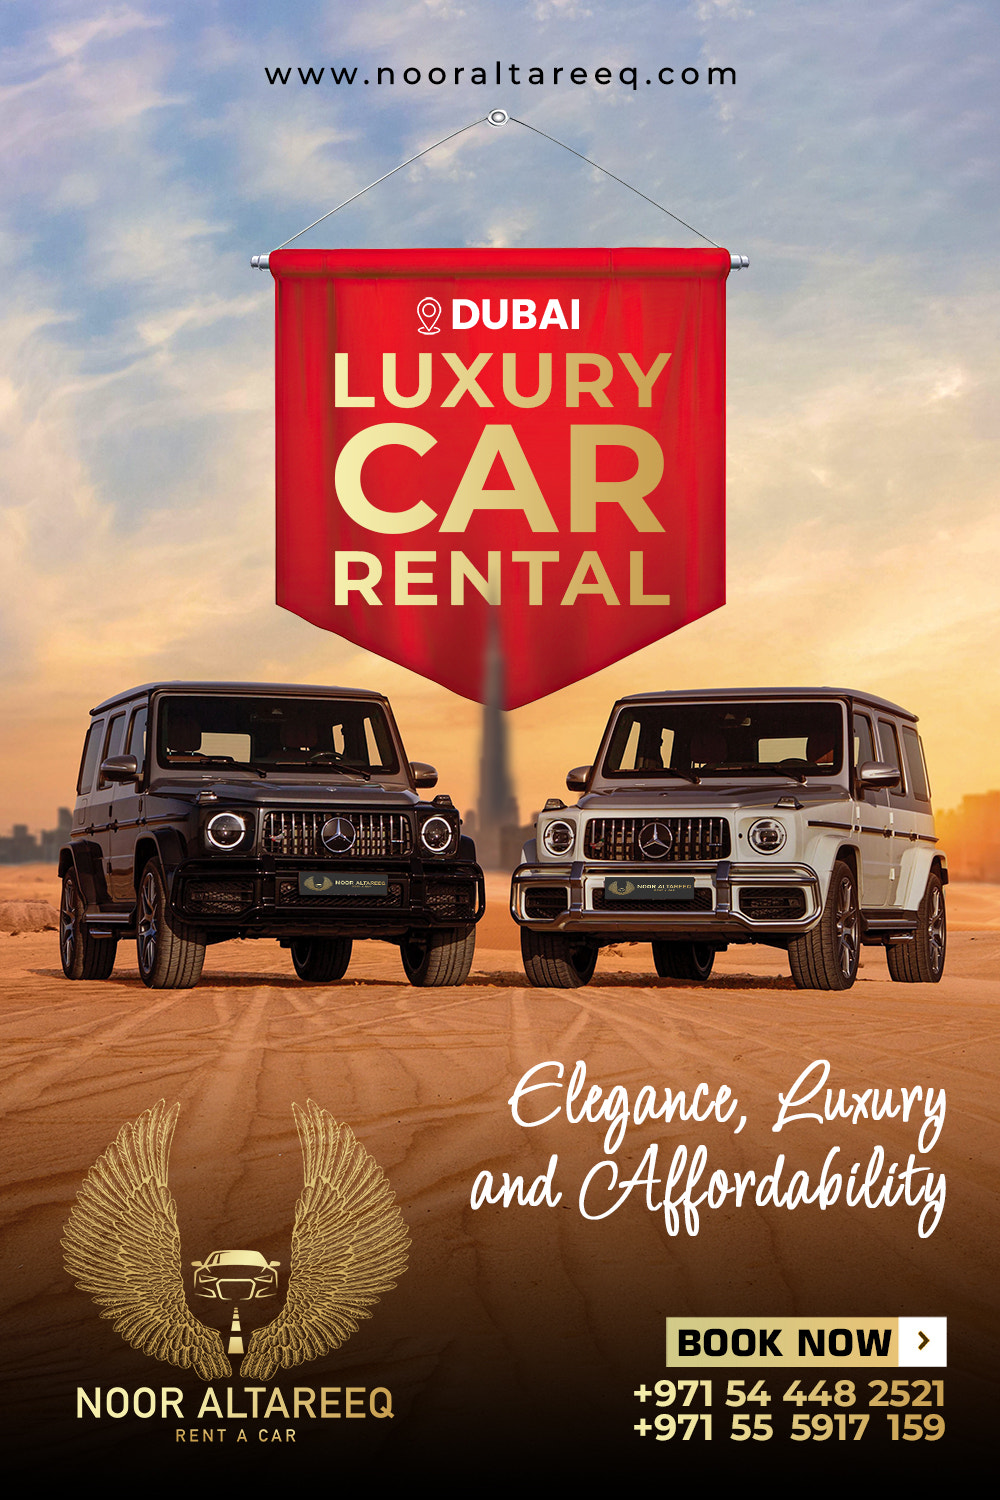 luxury Rental Cars|Noor Altareeq|Rent a car Dubai